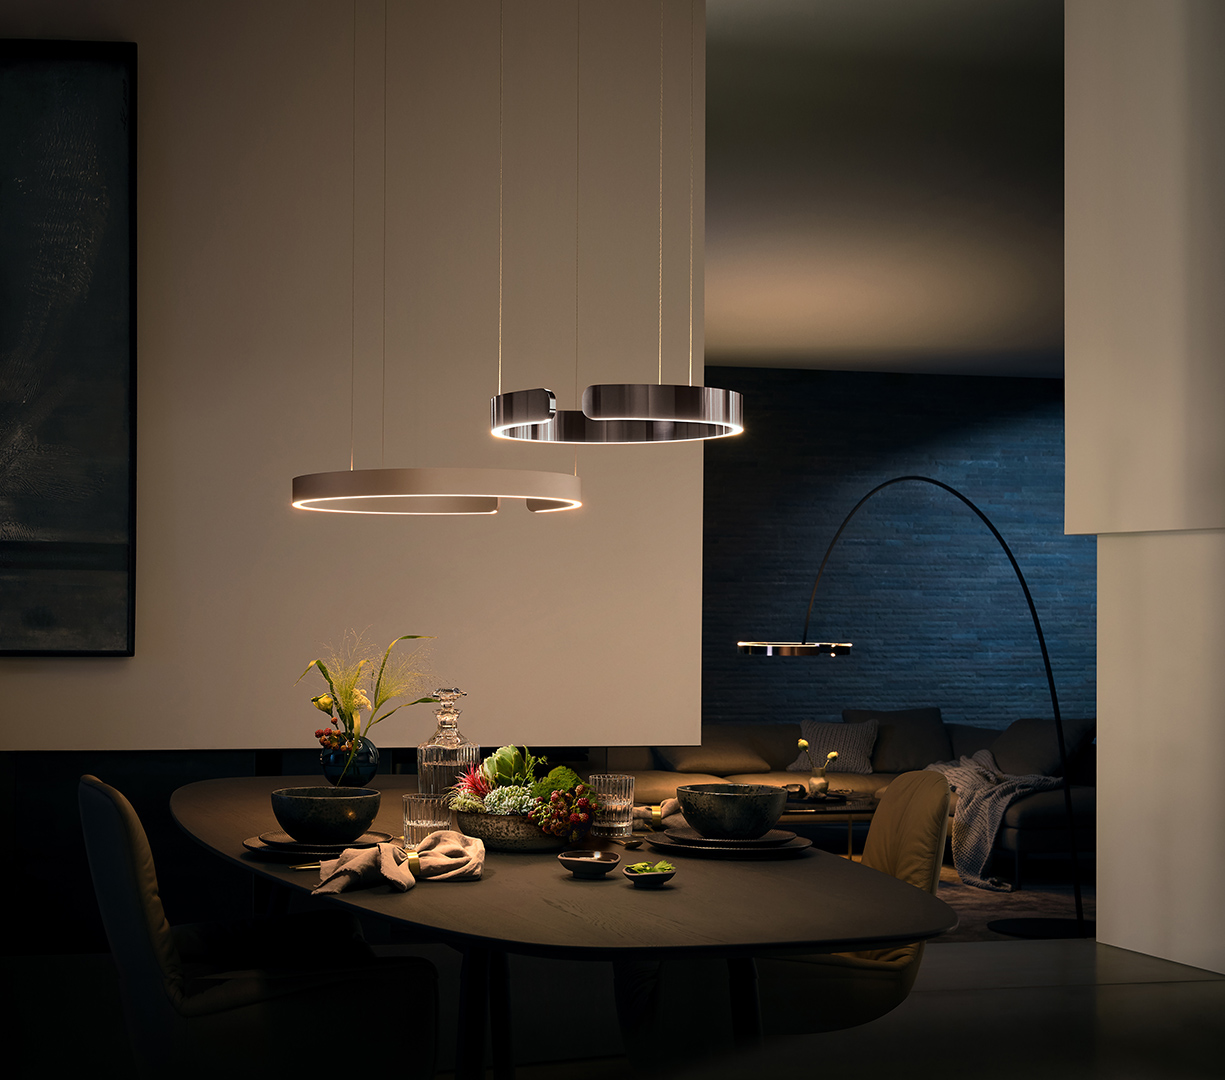 Thiết kế đèn hiện đại cho nội thất sang trọng.